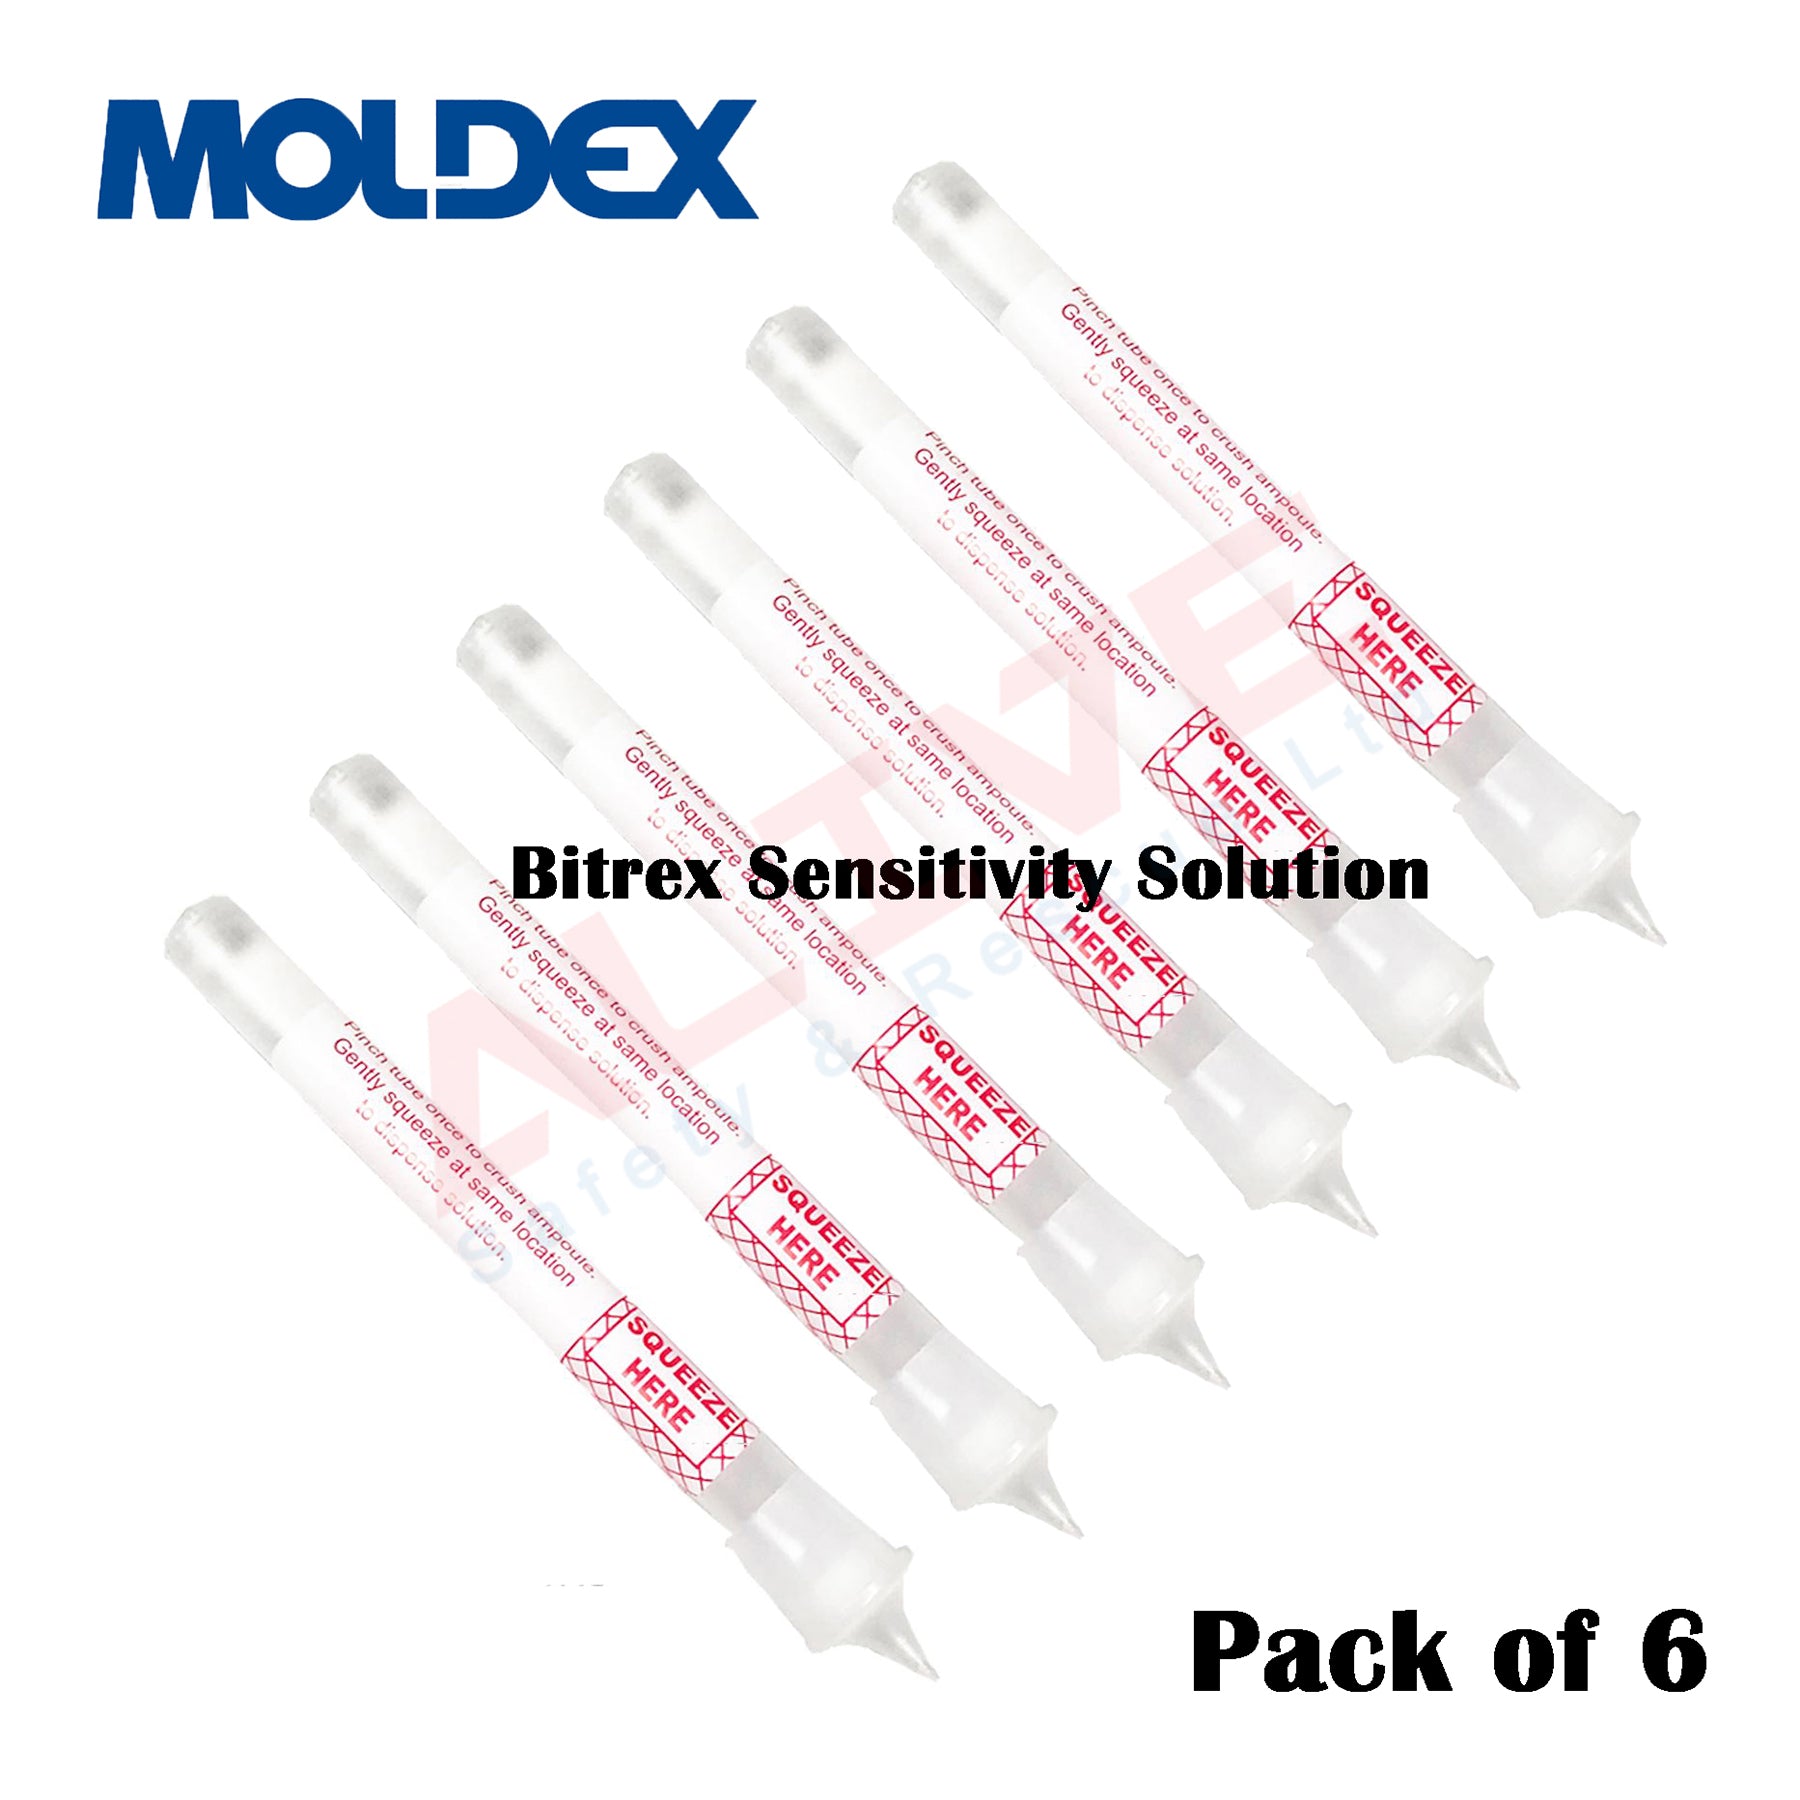 Moldex 0503 Bitrex Sensitivity Solution Ampoules 2.5ml